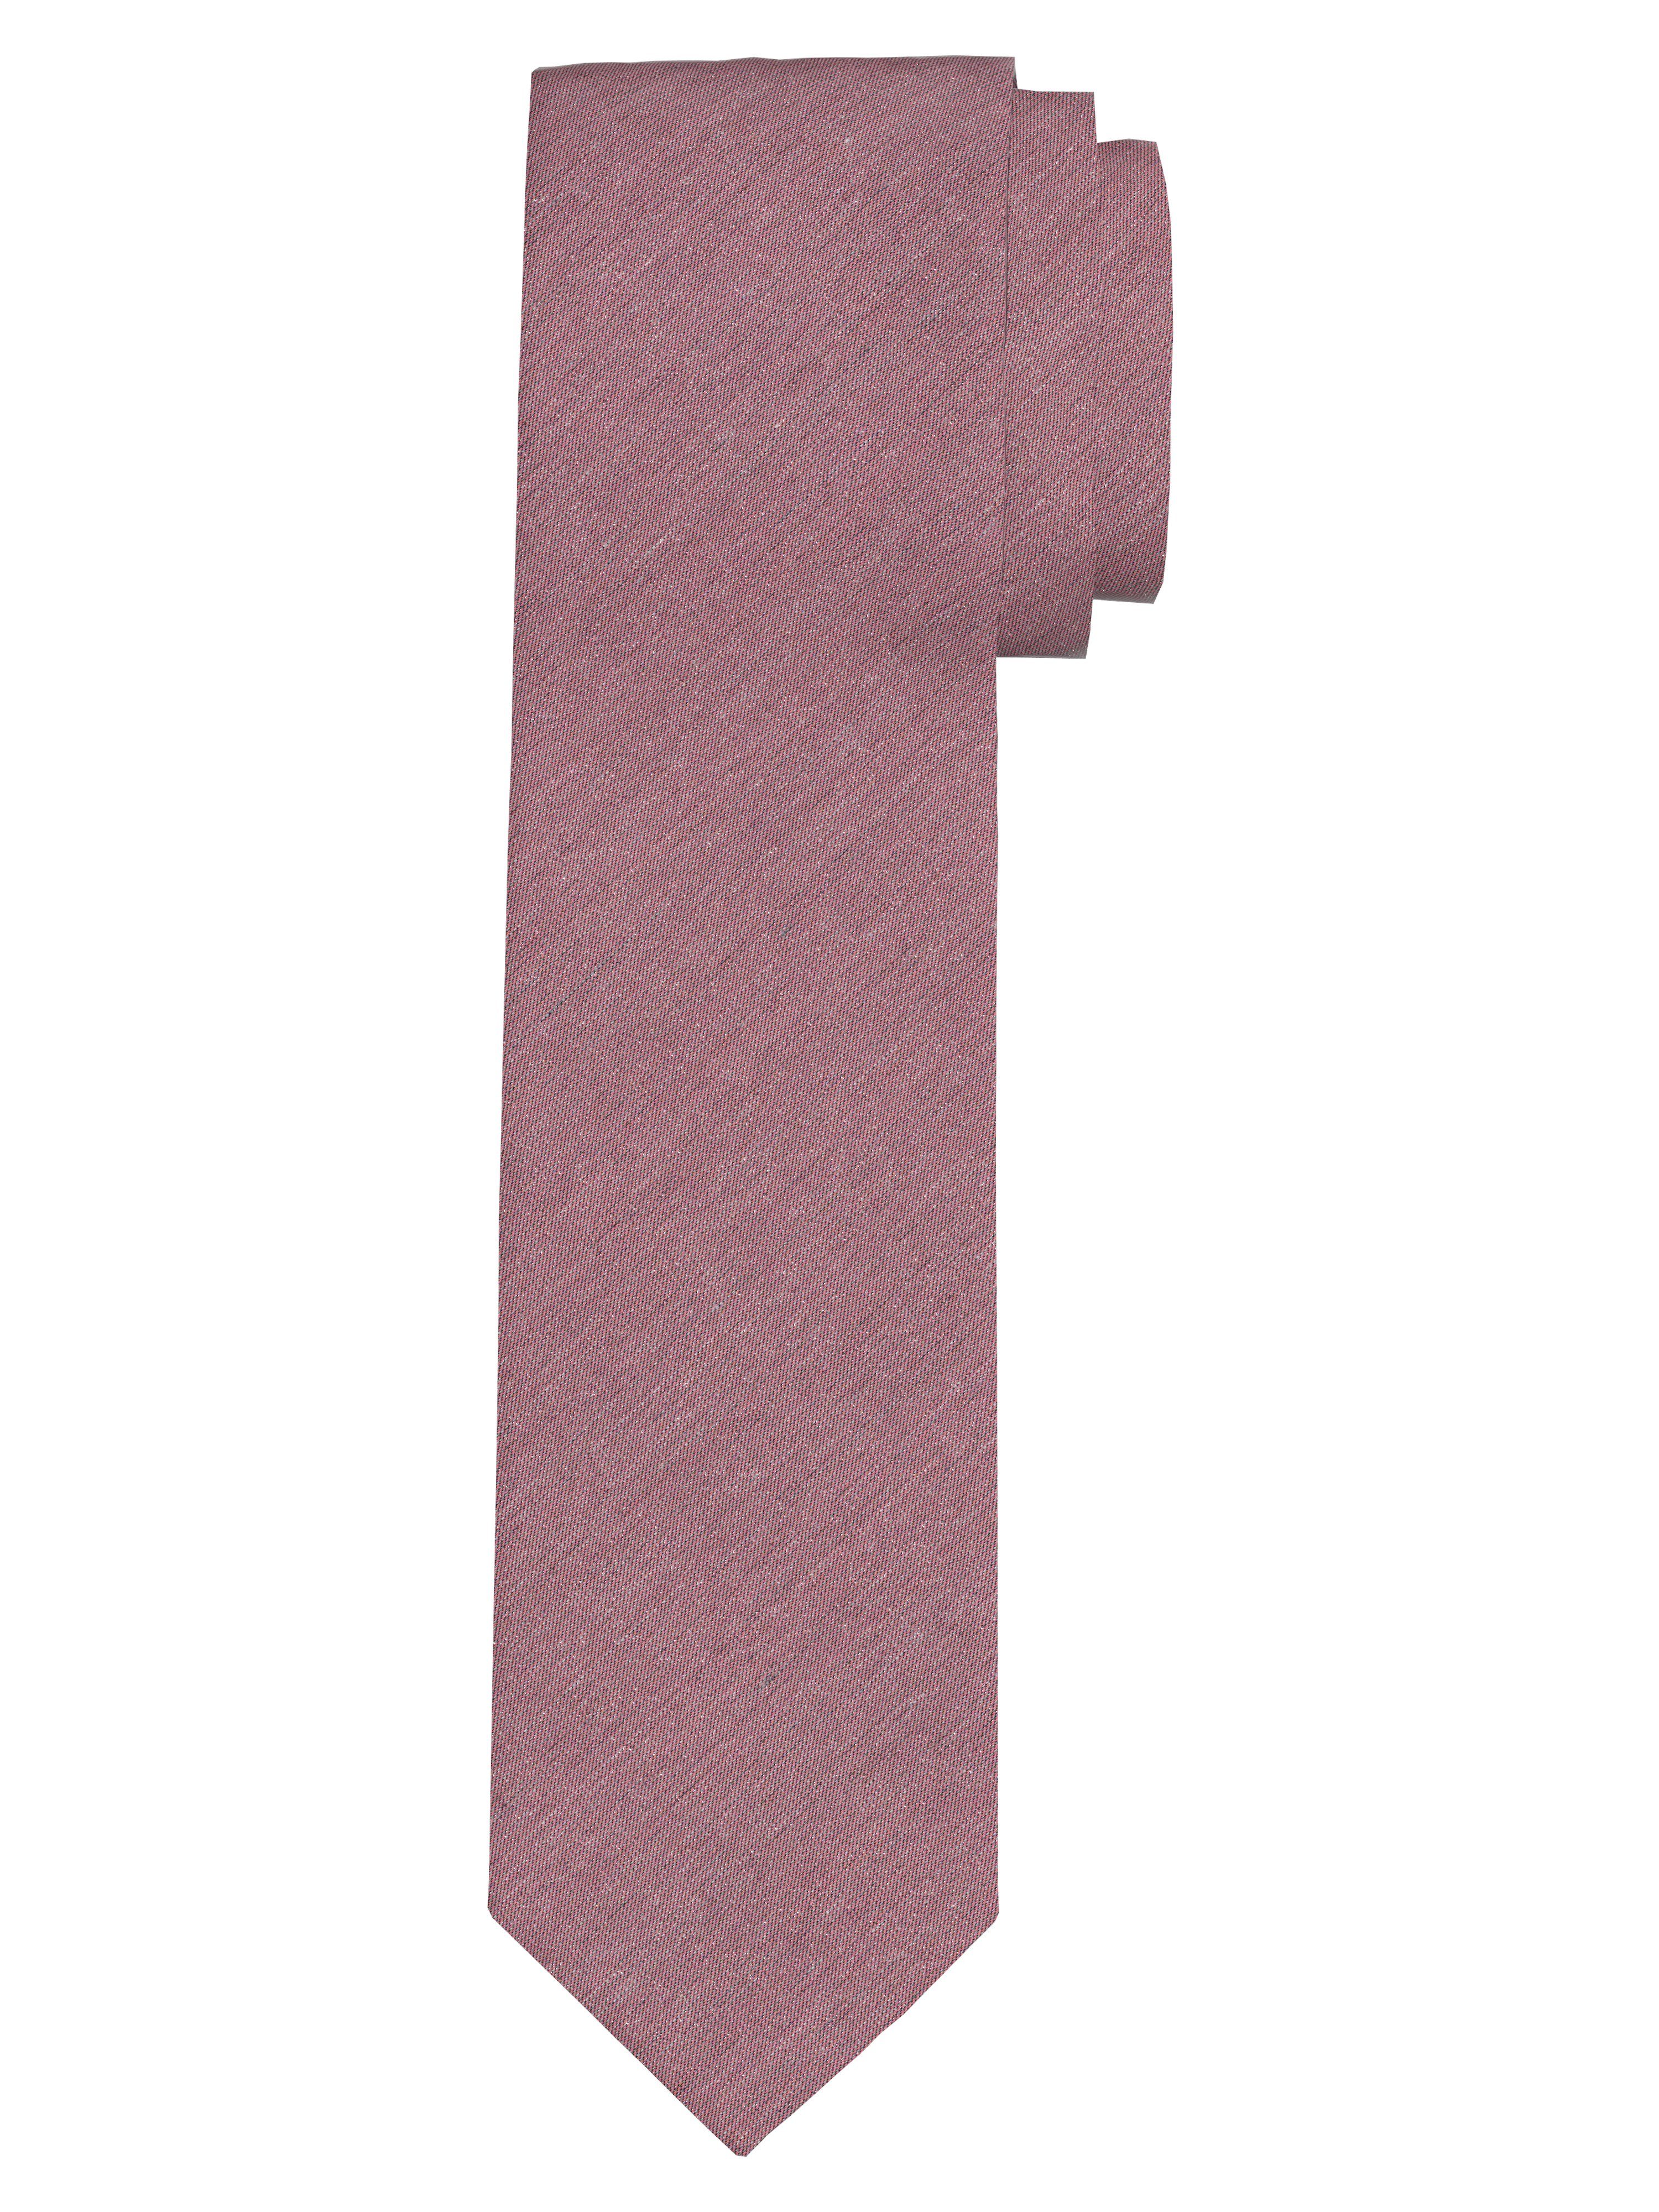 OLYMP Weste, Hemd & Krawatte/Fliege | Breite Krawatten